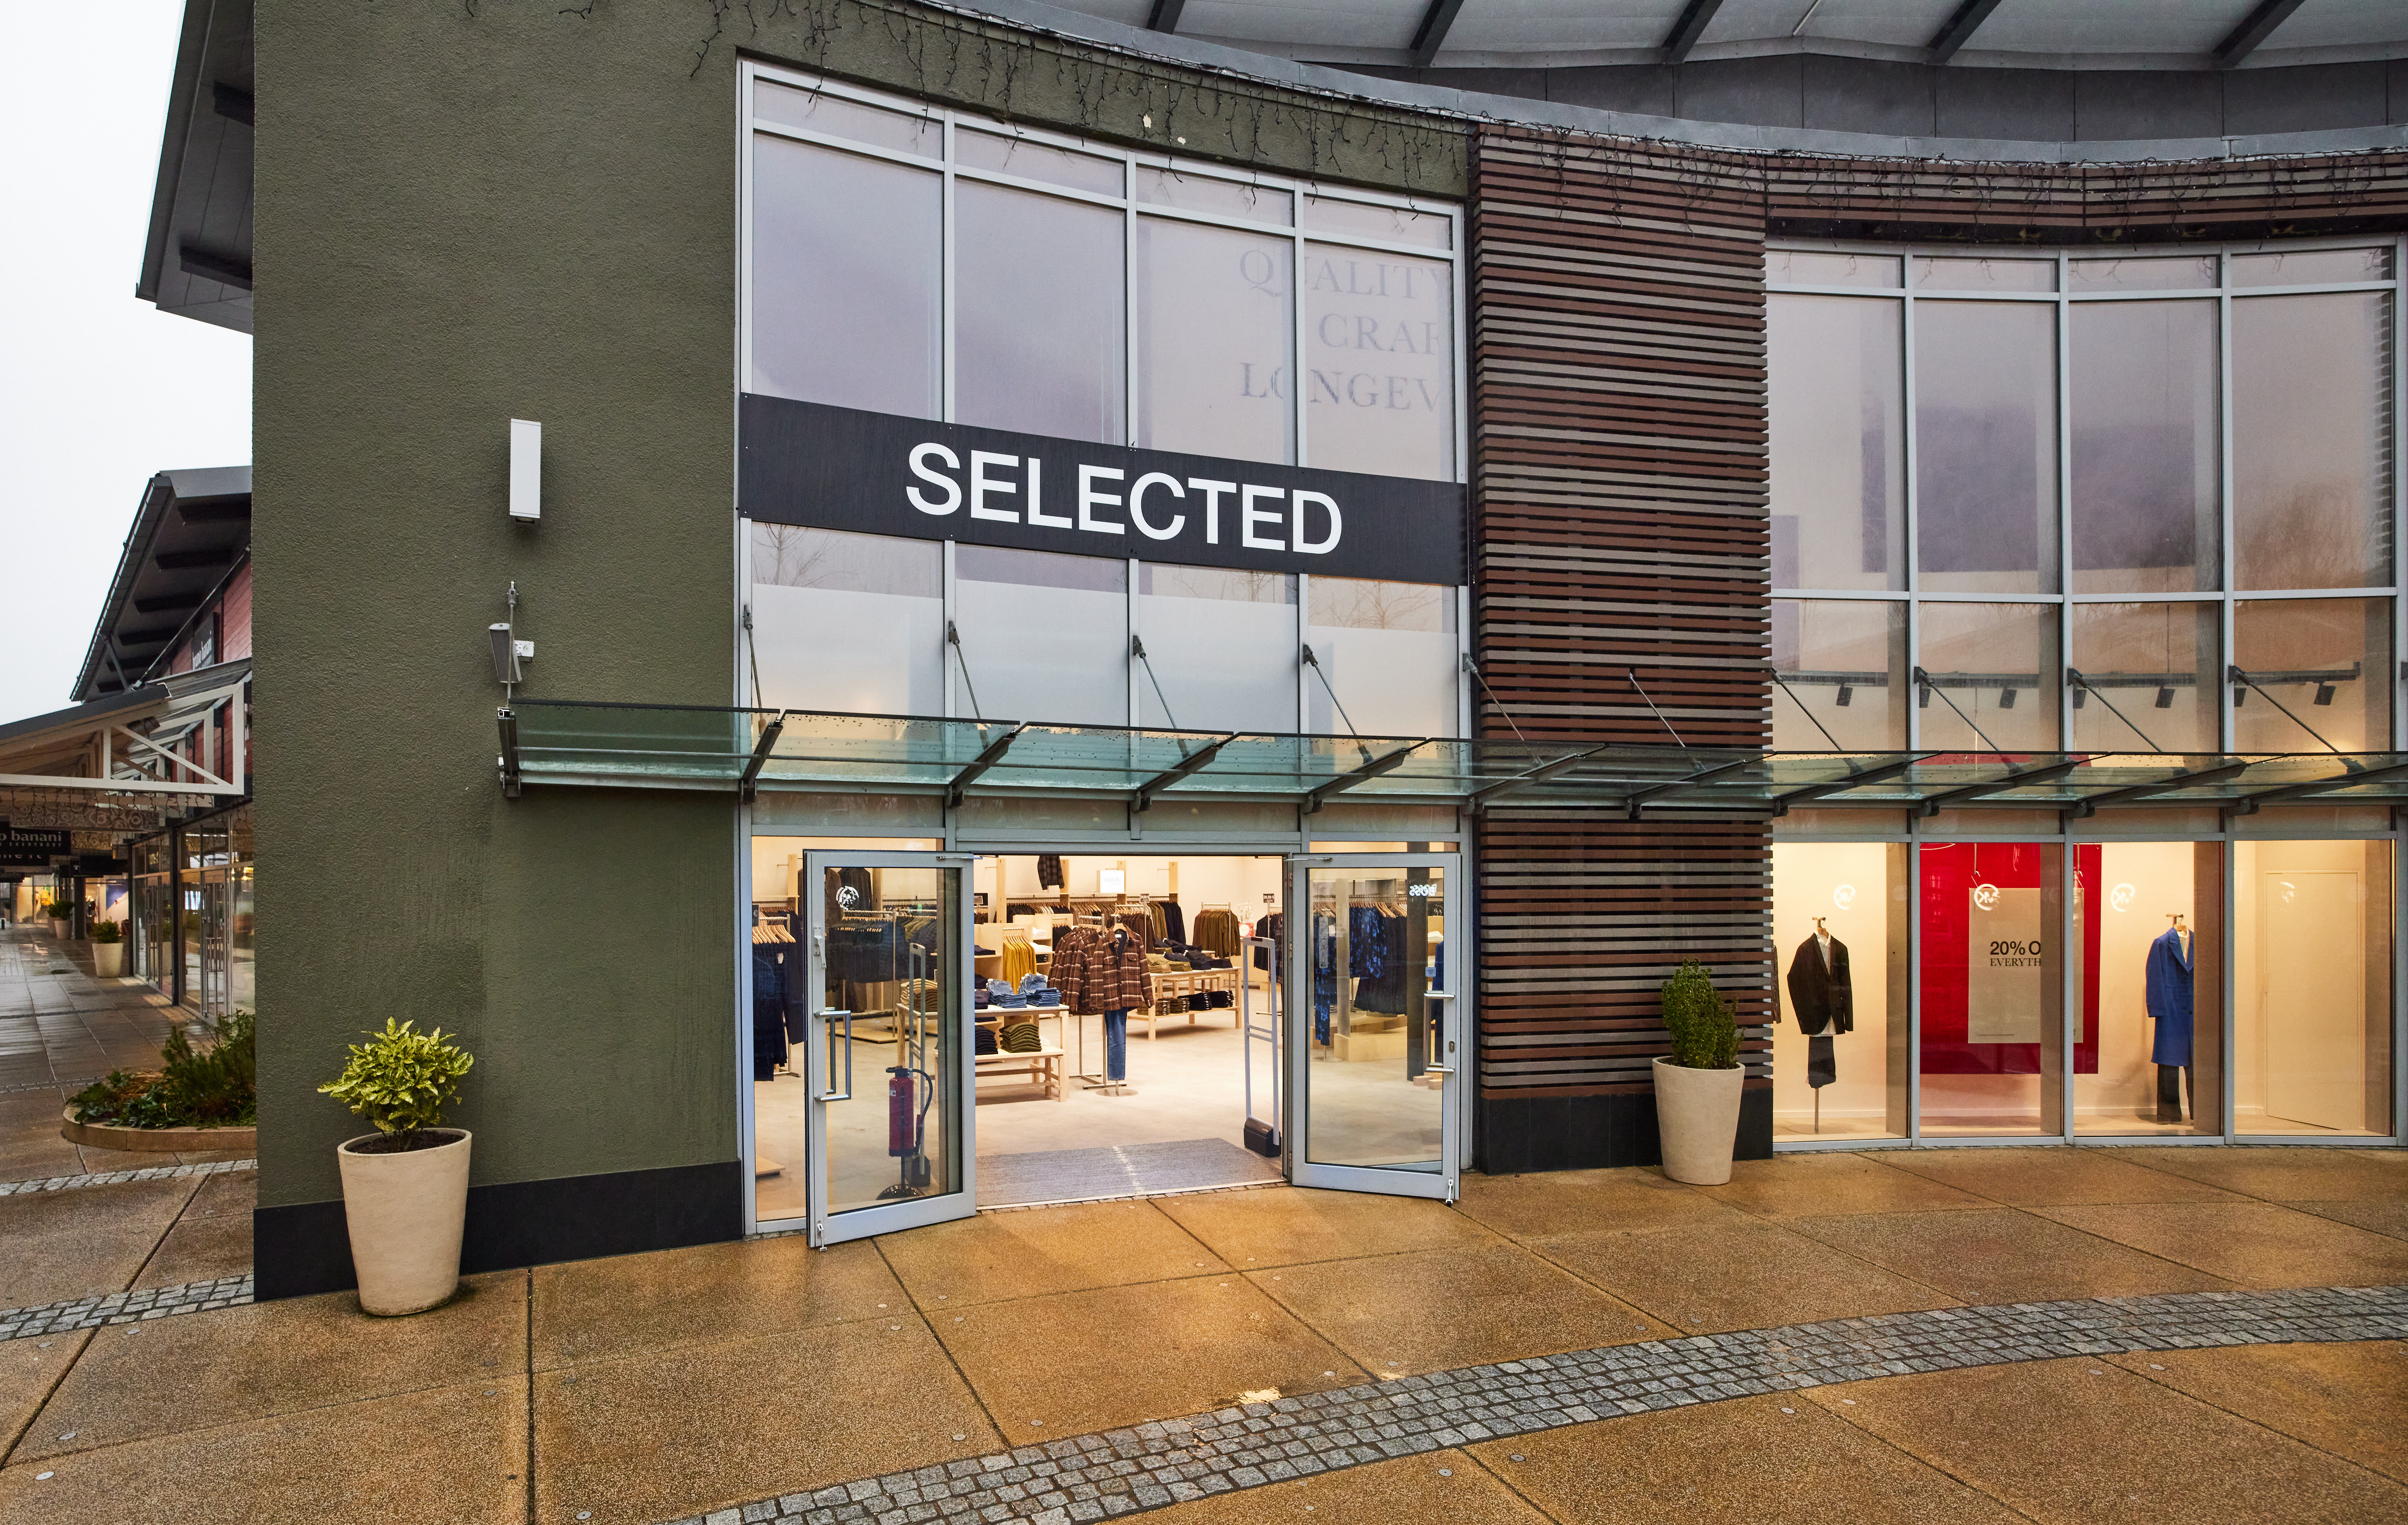 Neuer Store eröffnet - Cecil und Street One ziehen ins Zweibrücken Fashion  Outlet - Homburg1